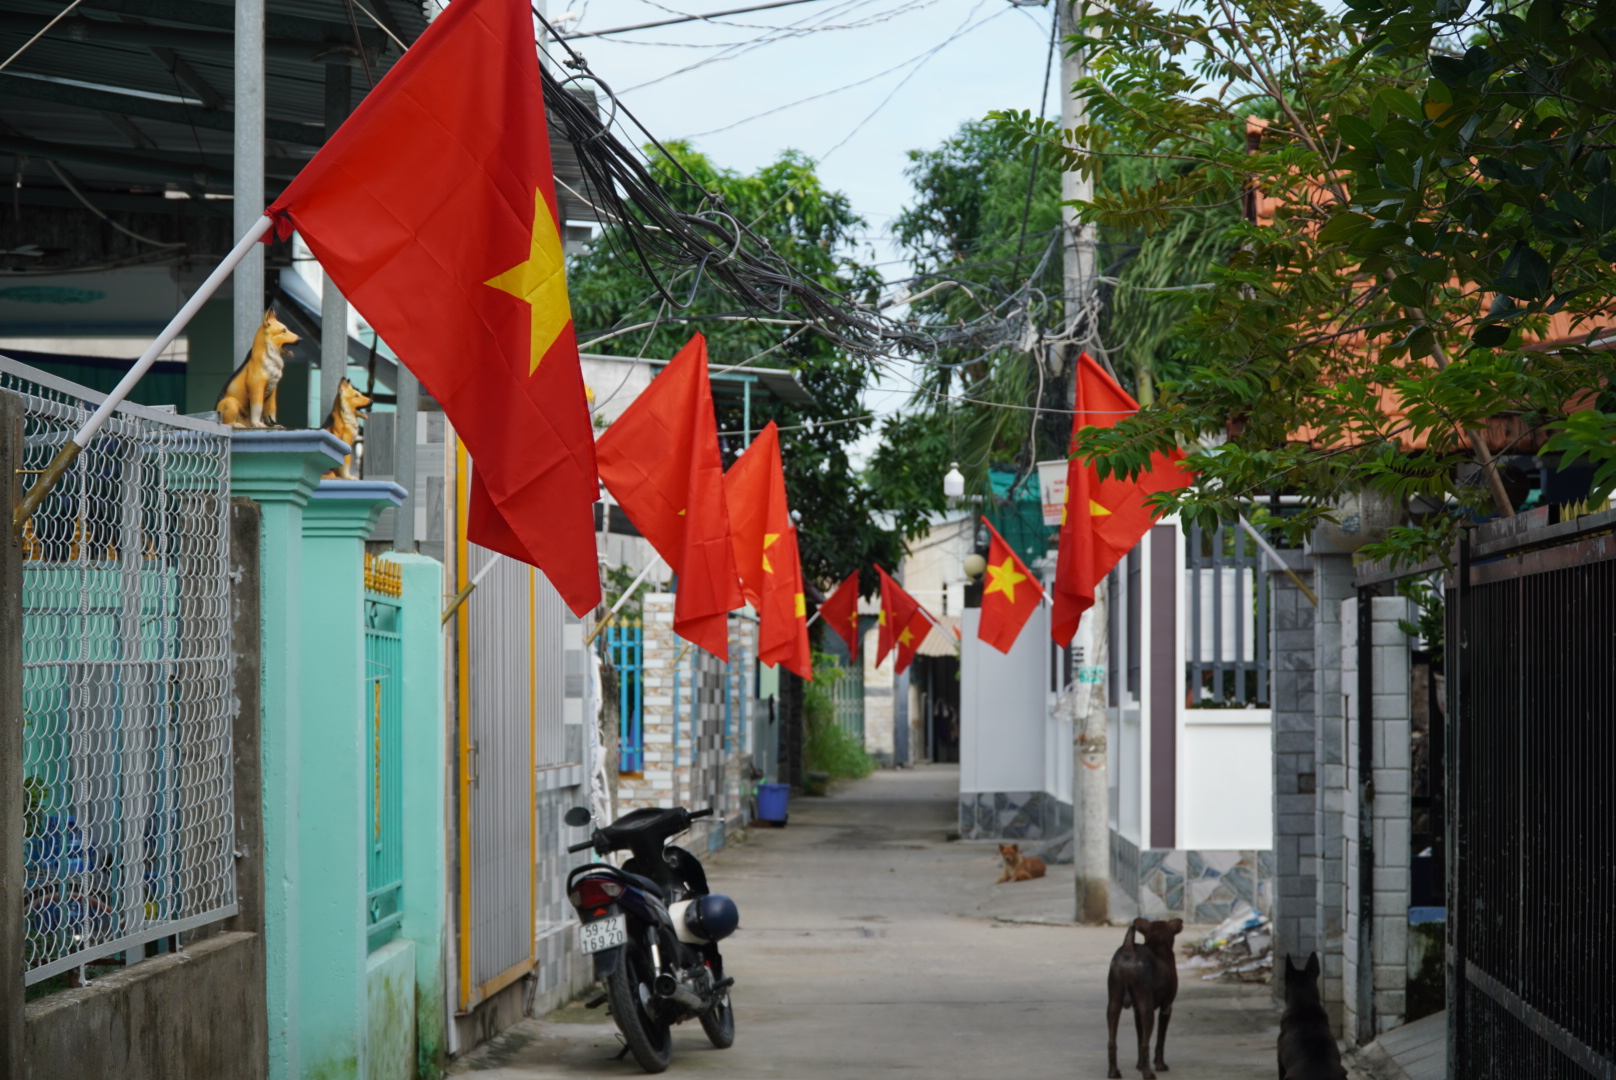 Ấn tượng “Đường cờ Tổ quốc” ở xã Bình Khánh, huyện Cần Giờ - Ảnh 2.